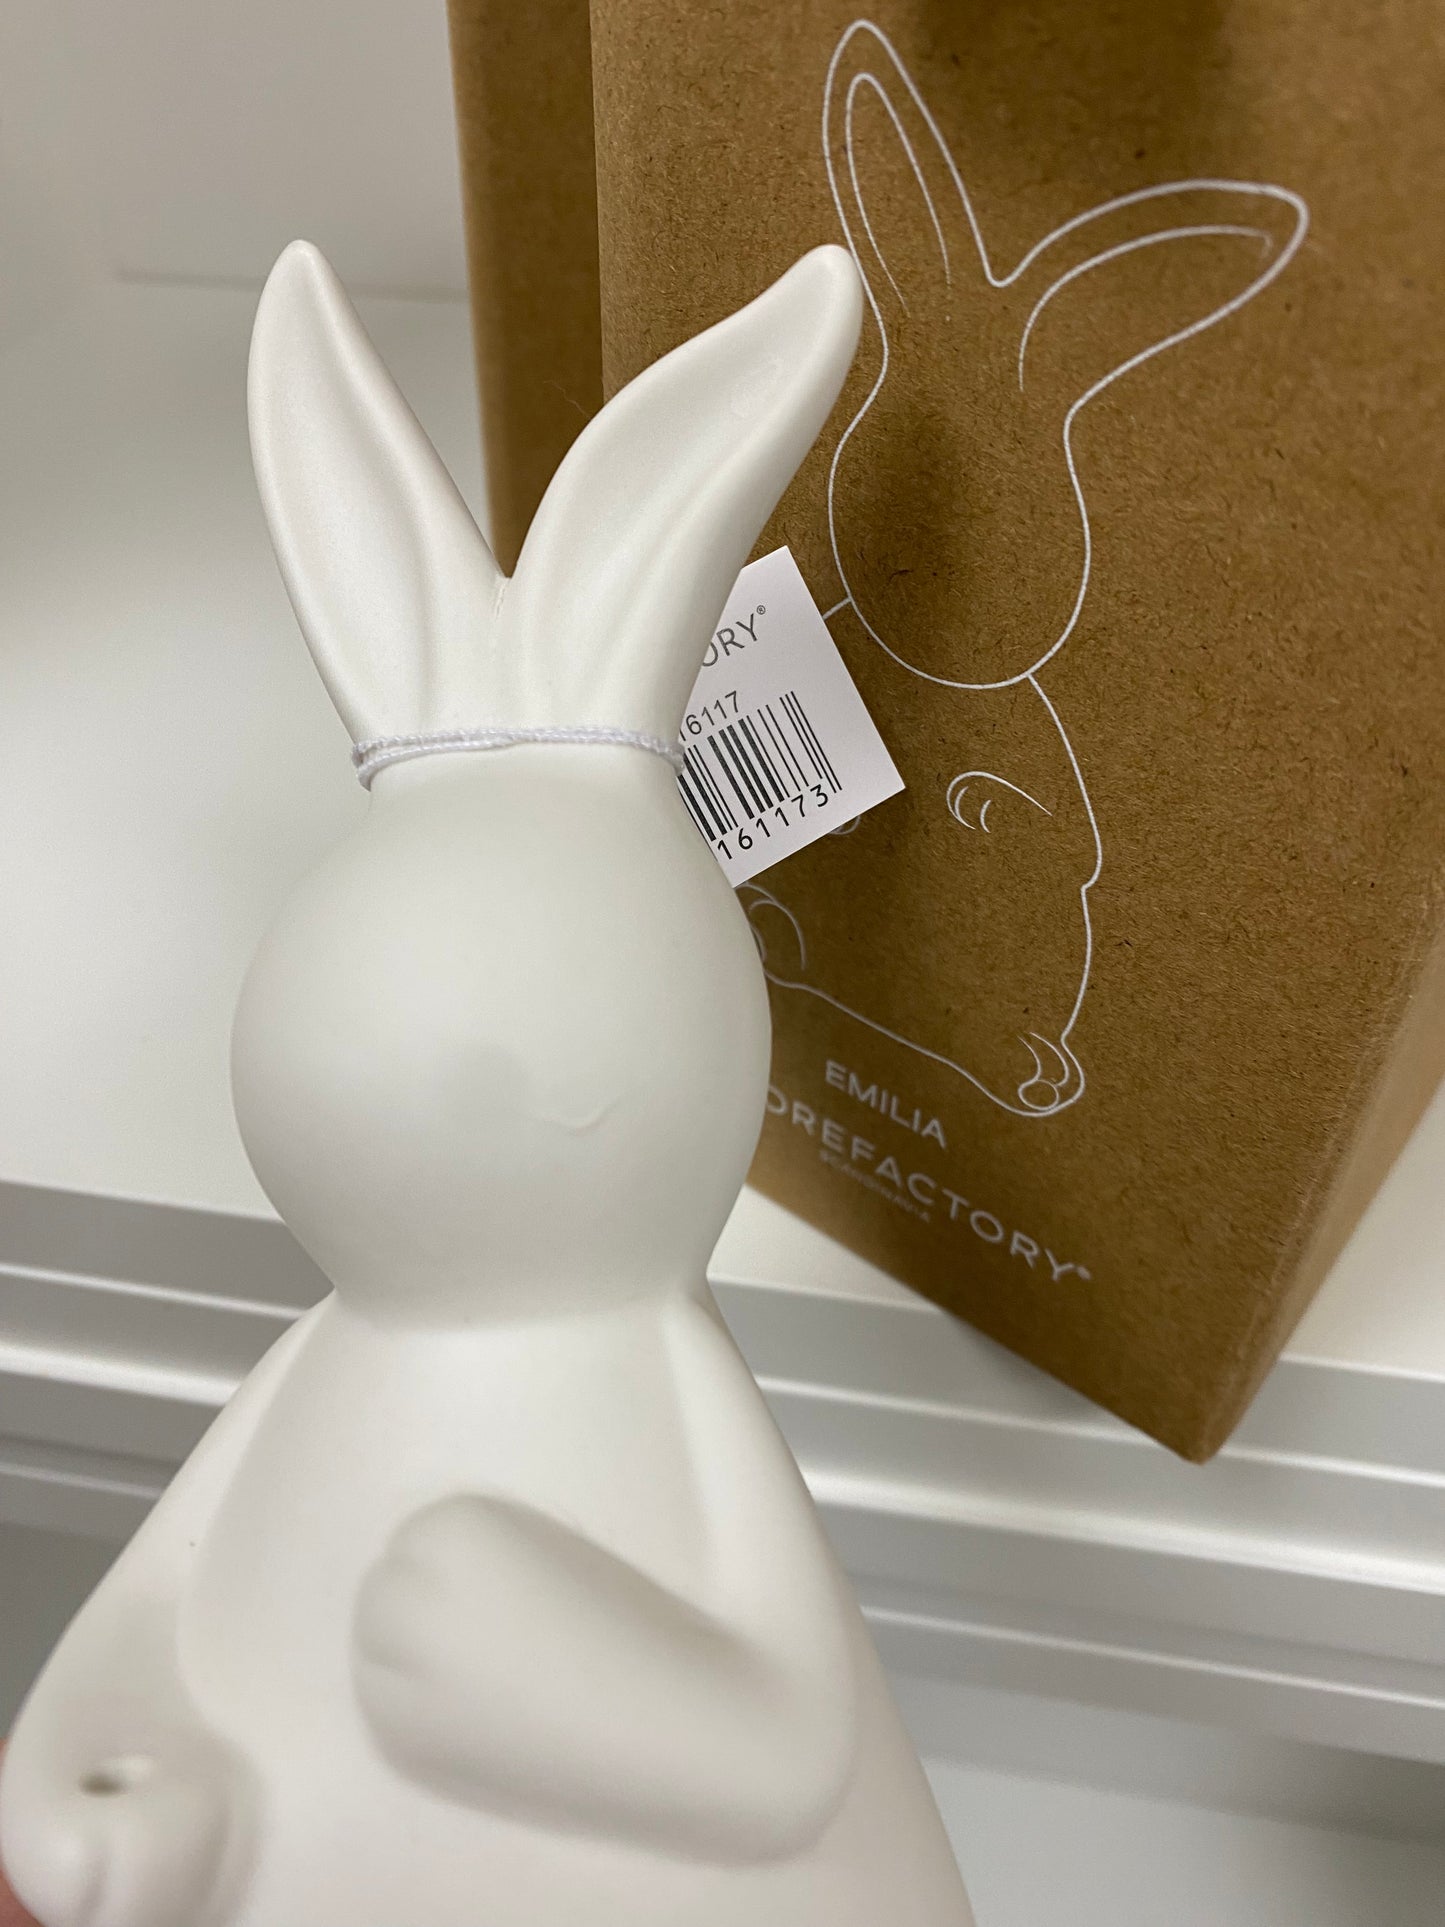 Amilia white Bunny - 3 sizes - imperfect